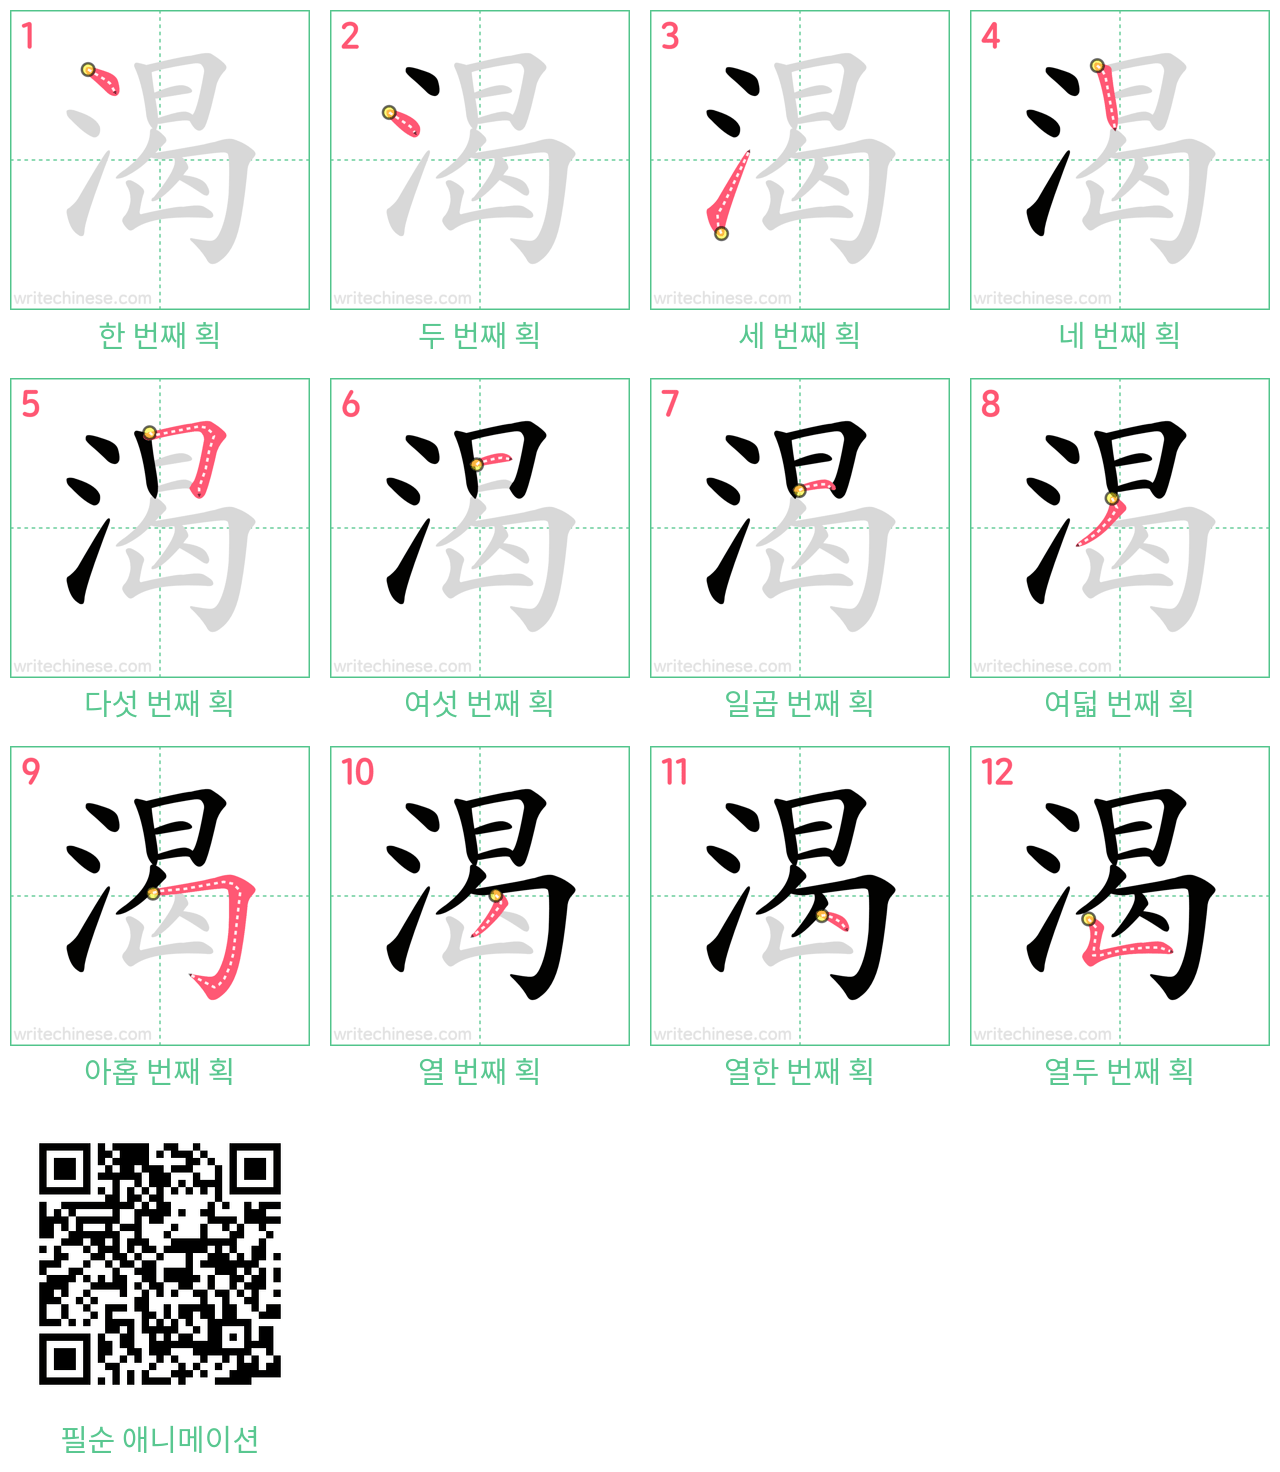 渴 step-by-step stroke order diagrams